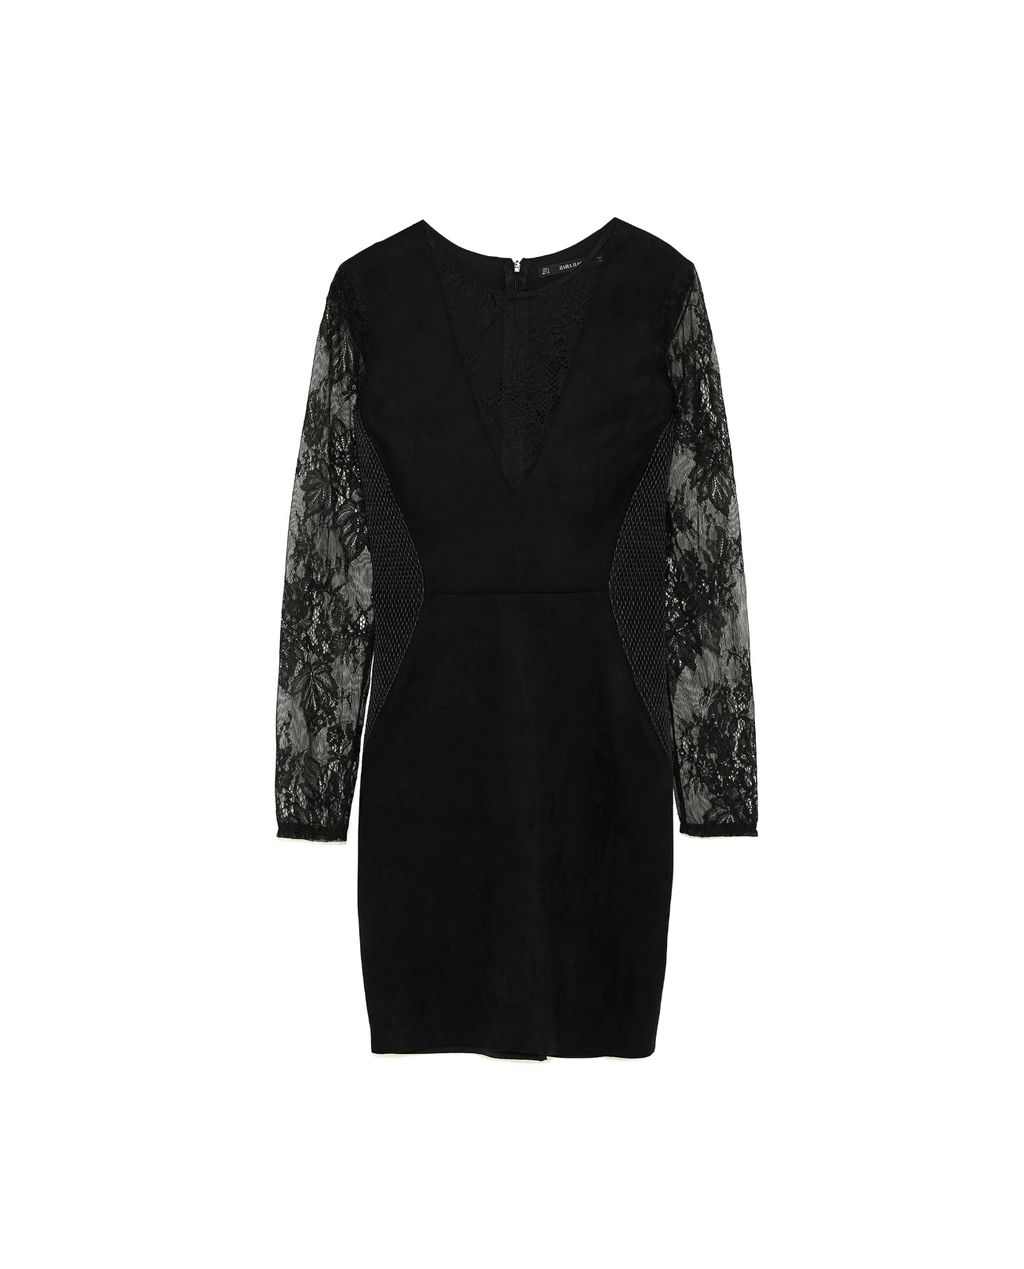 Mala crna haljina, Zara, 229 kn